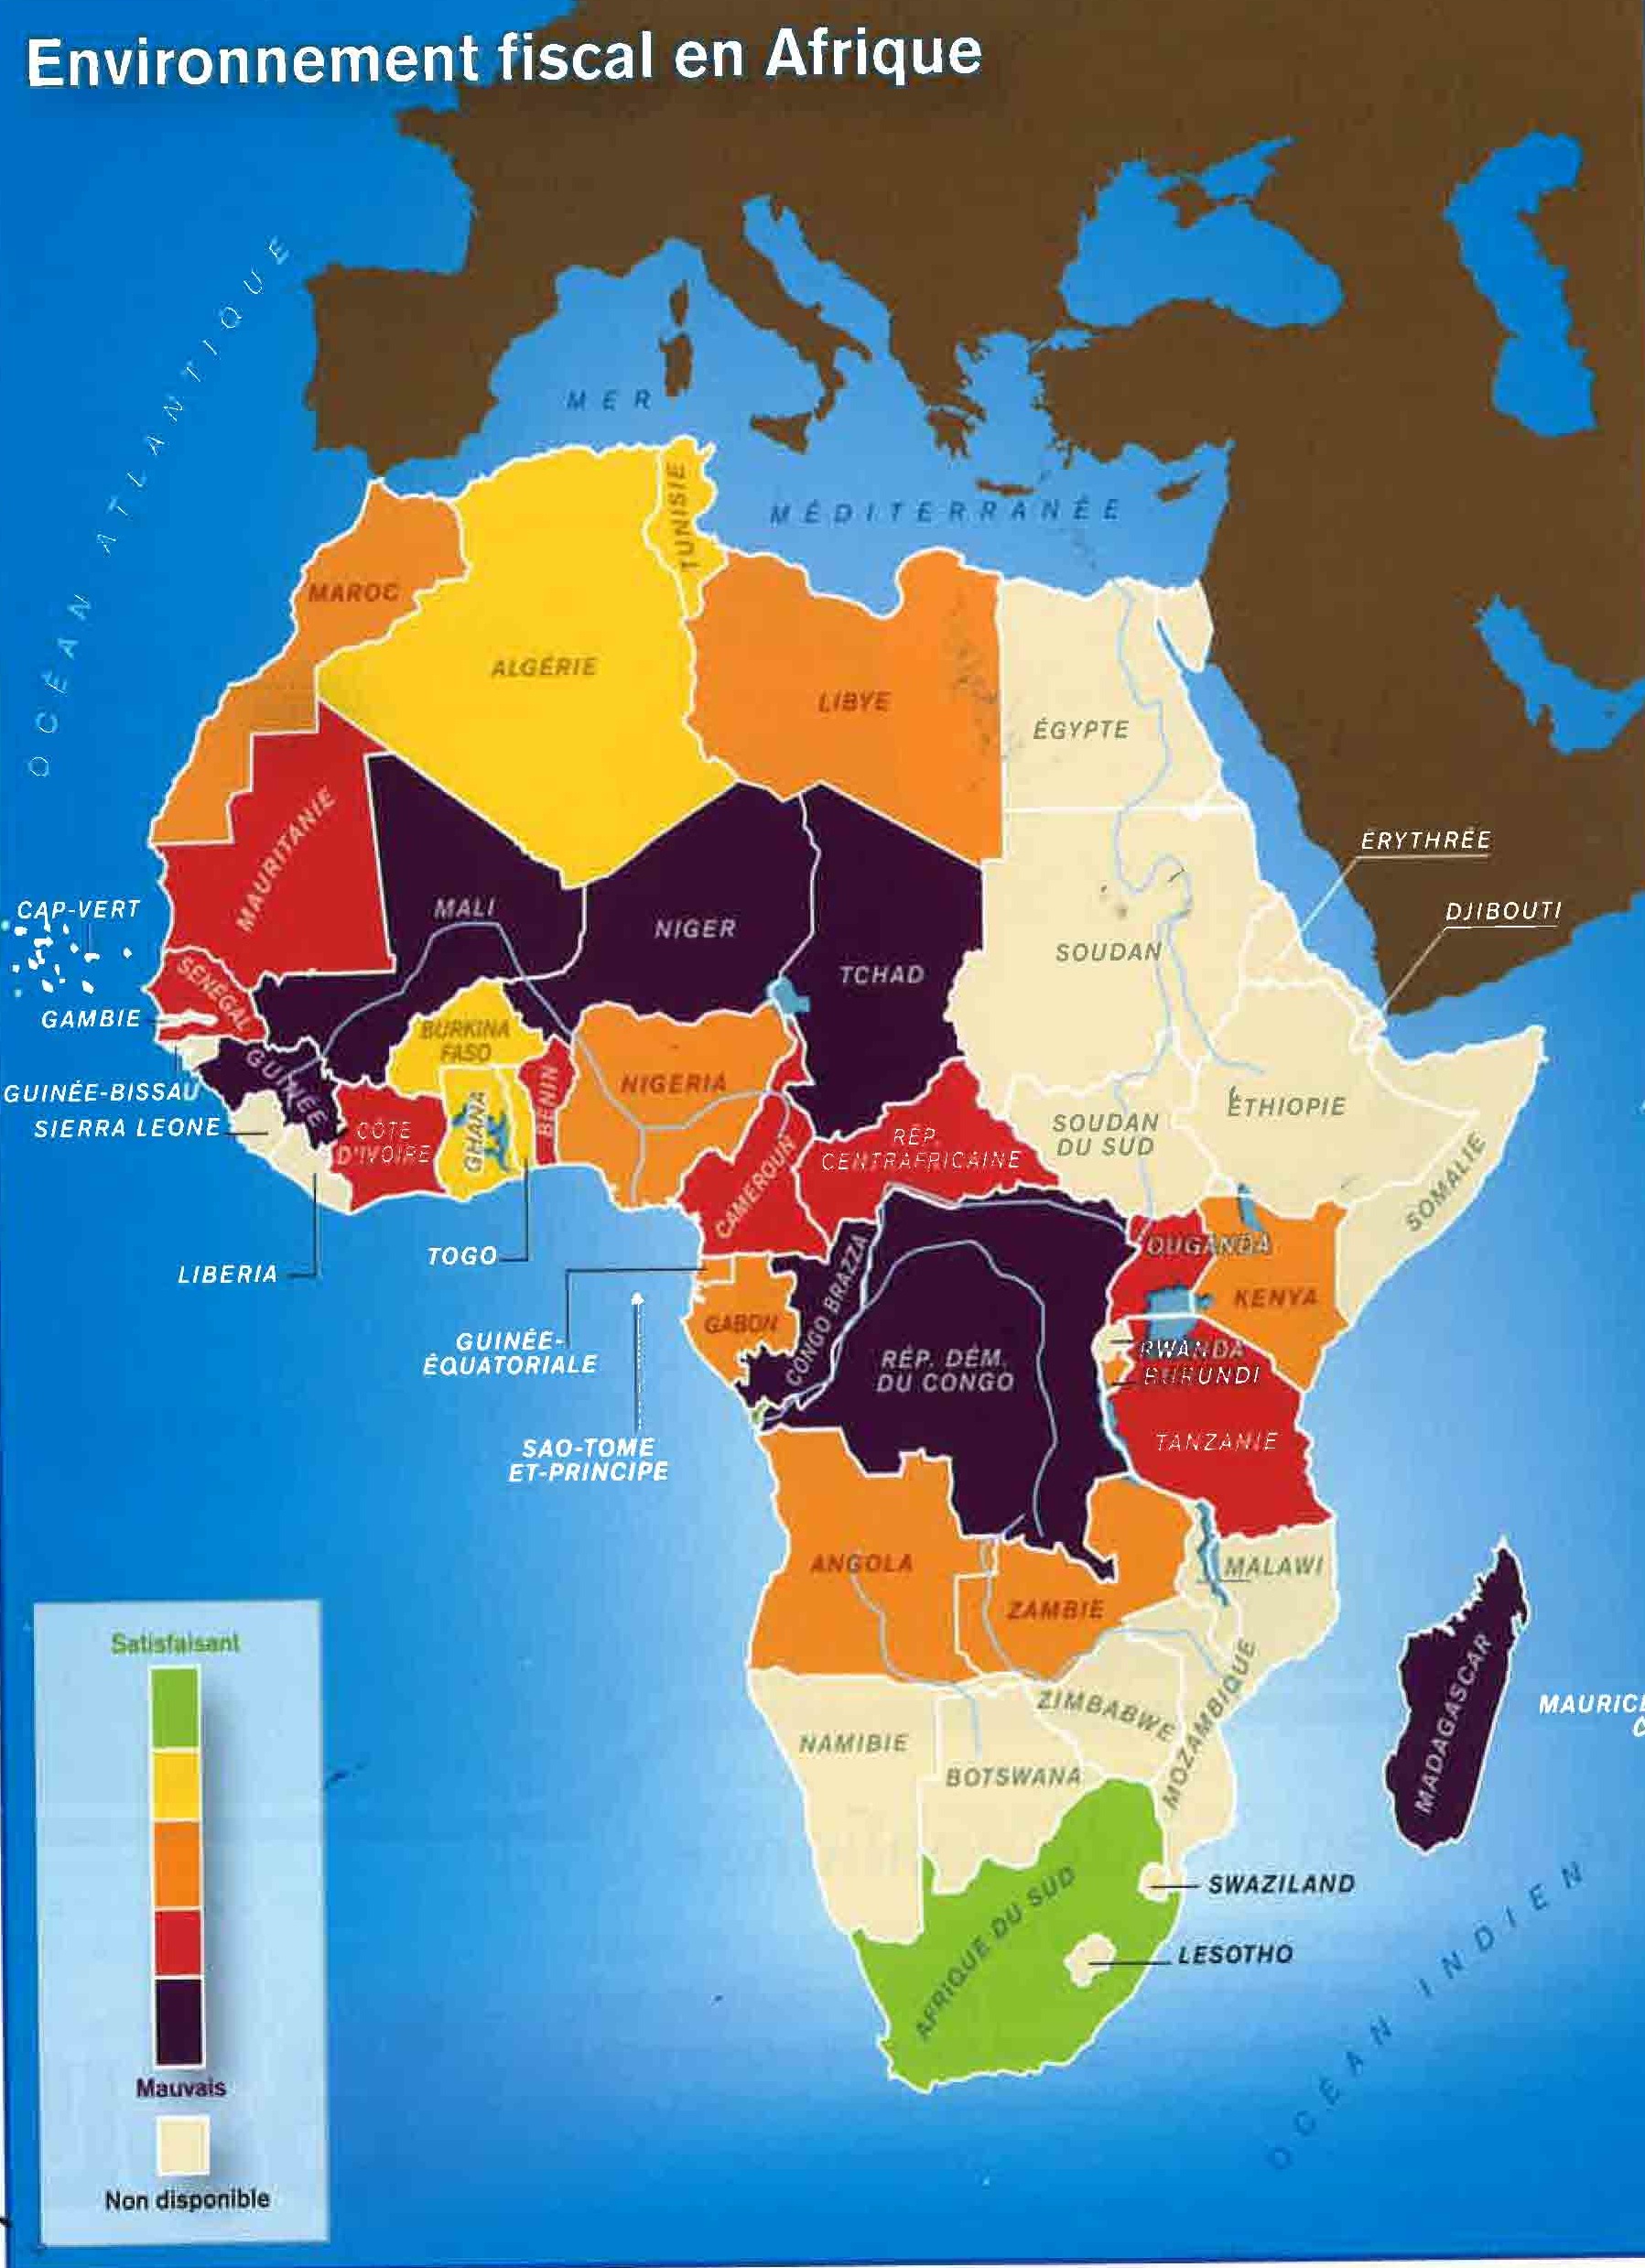 Environnement fiscal en Afrique, rapport CIAN